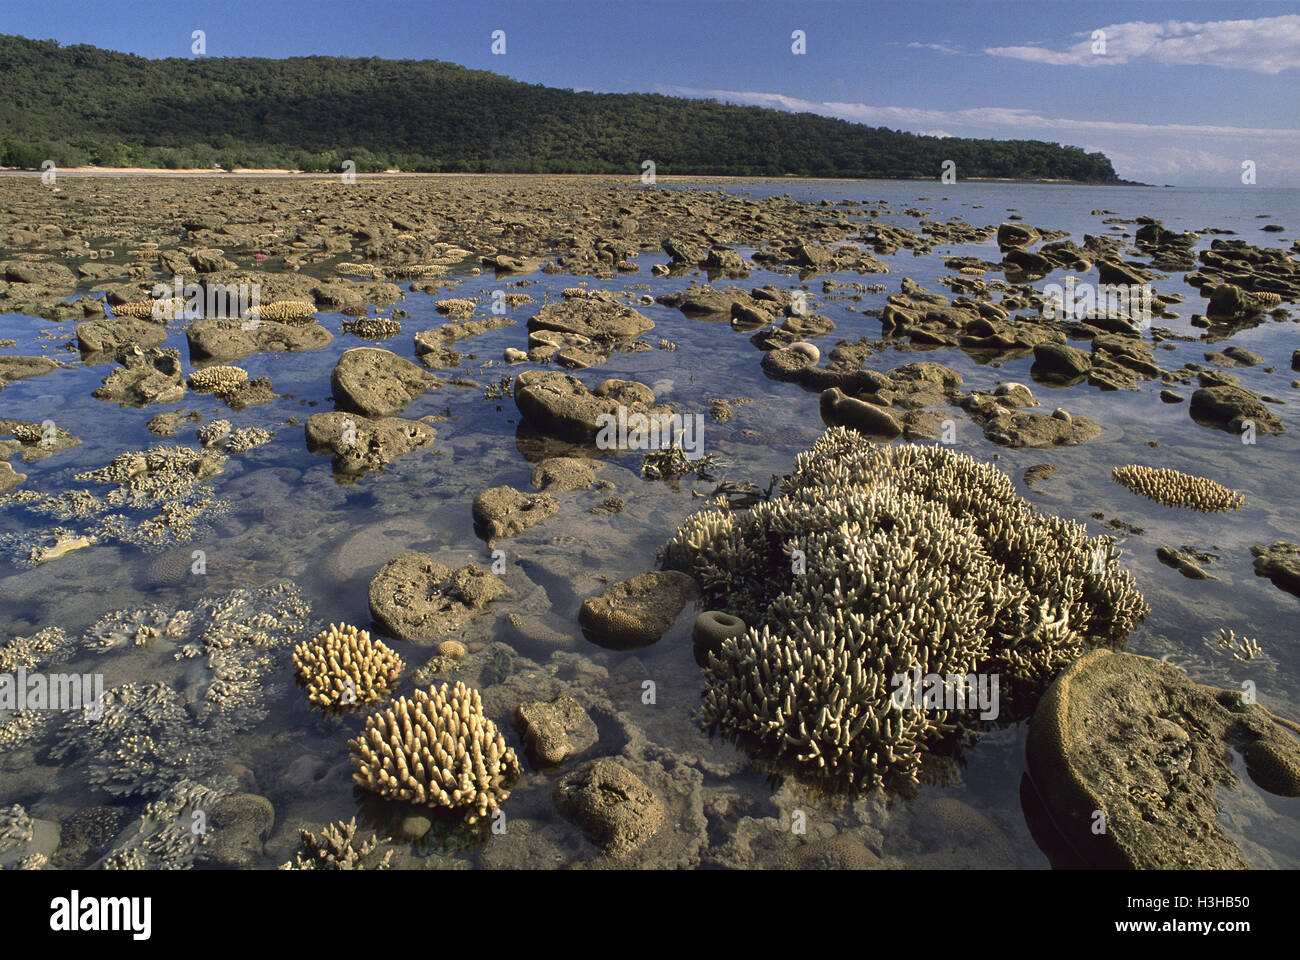 Los corales duros y blandos expuestos en la marea baja. Foto de stock